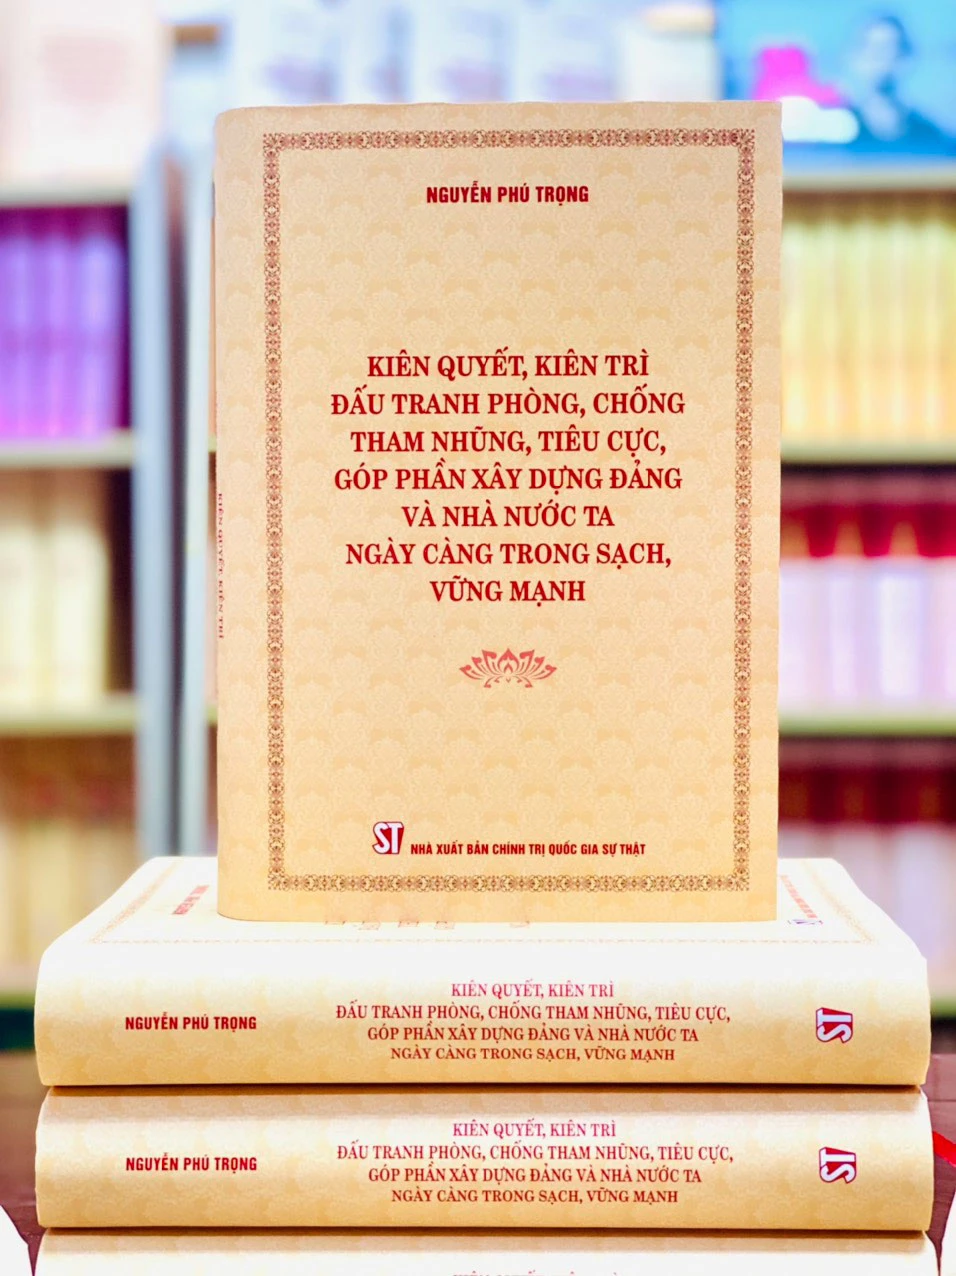 Bìa sách của Tổng Bí thư Nguyễn Phú Trọng